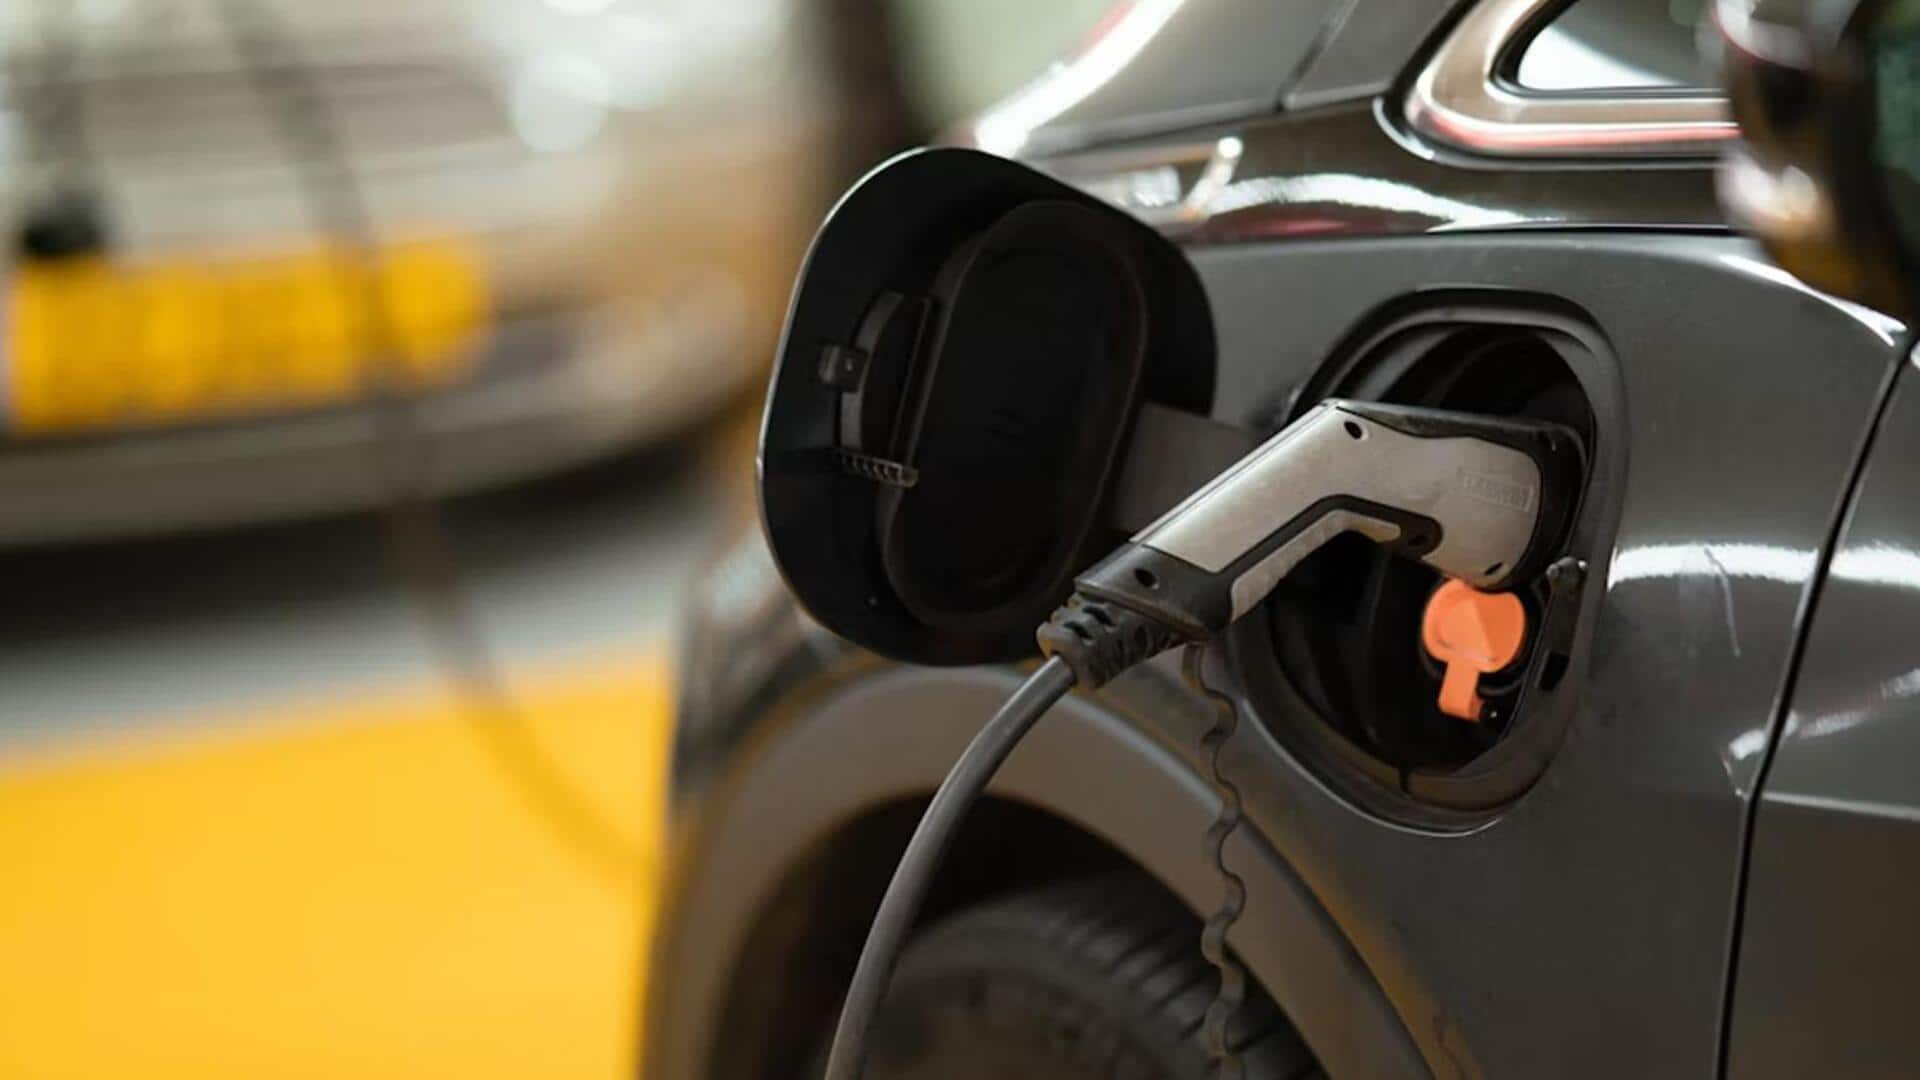 चार्जिंग स्टेशन पर कार चार्ज करते समय इन बातों का रखें ध्यान, लंबी चलेगी बैटरी